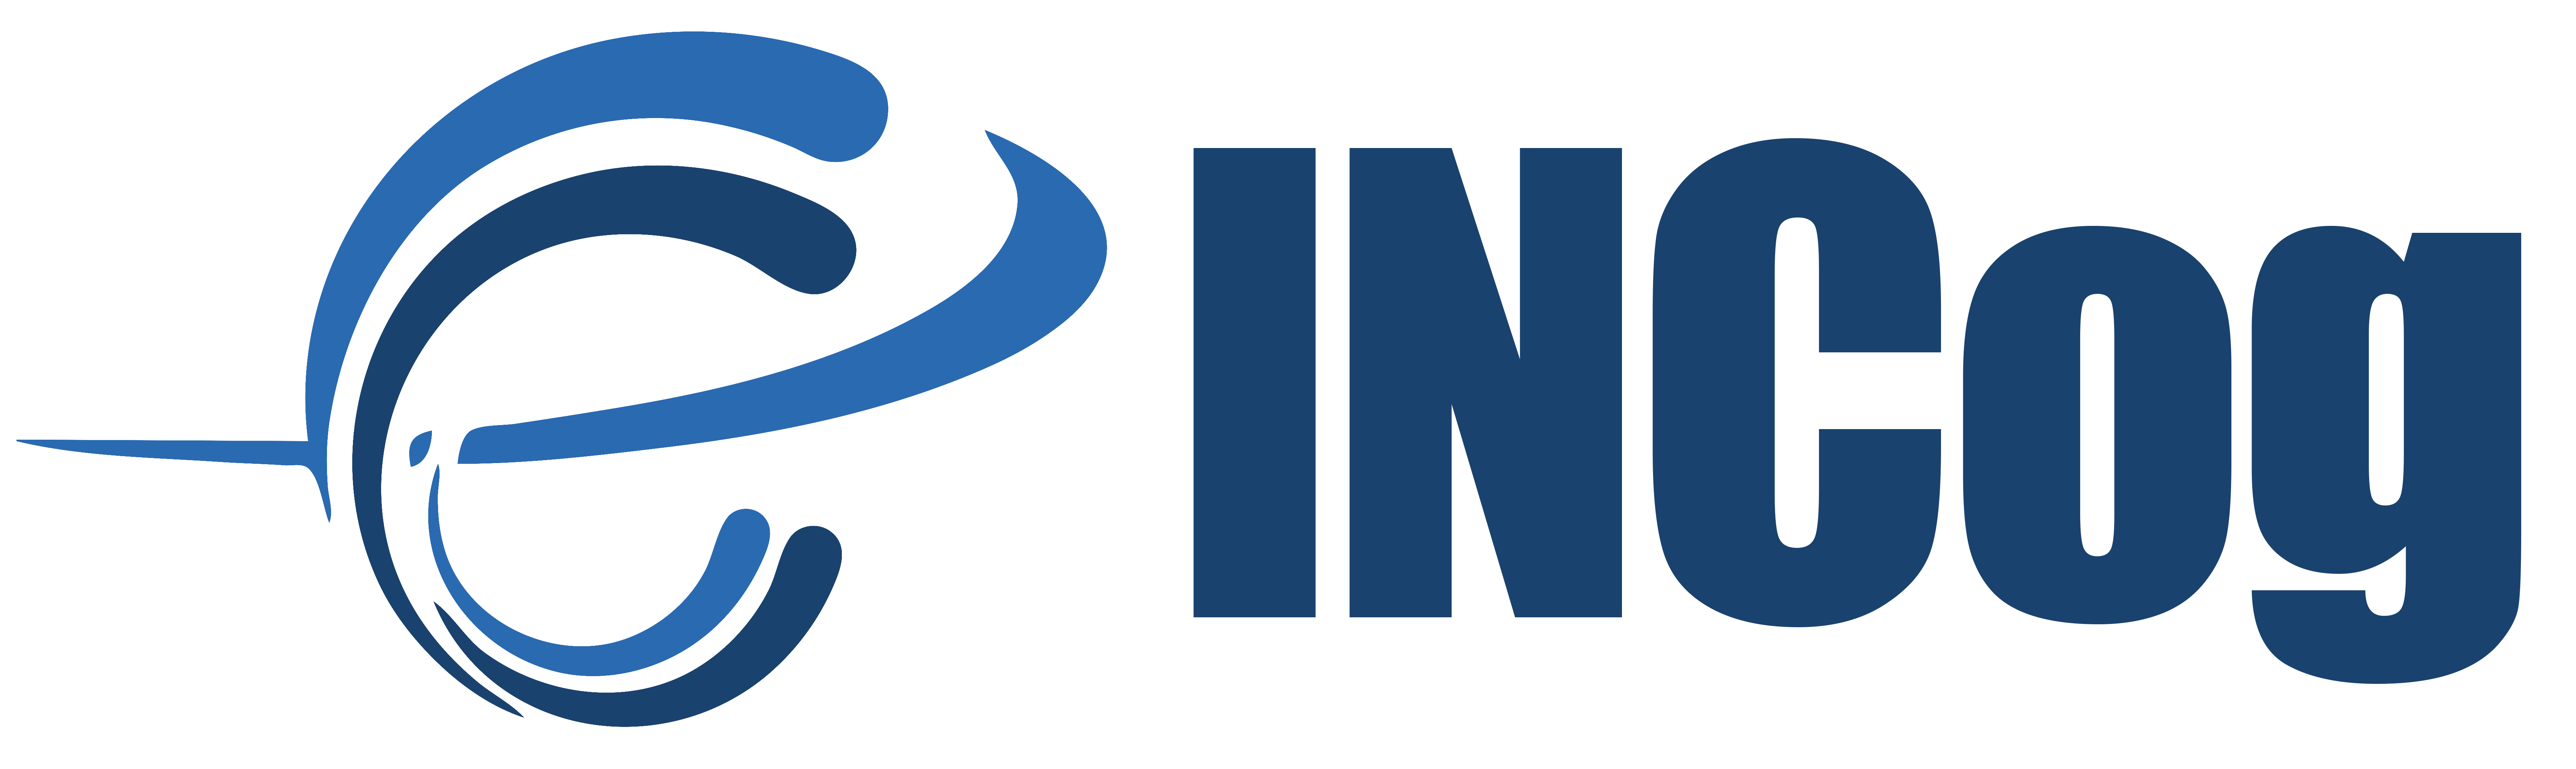 logo-INCOG-HI-RES.png